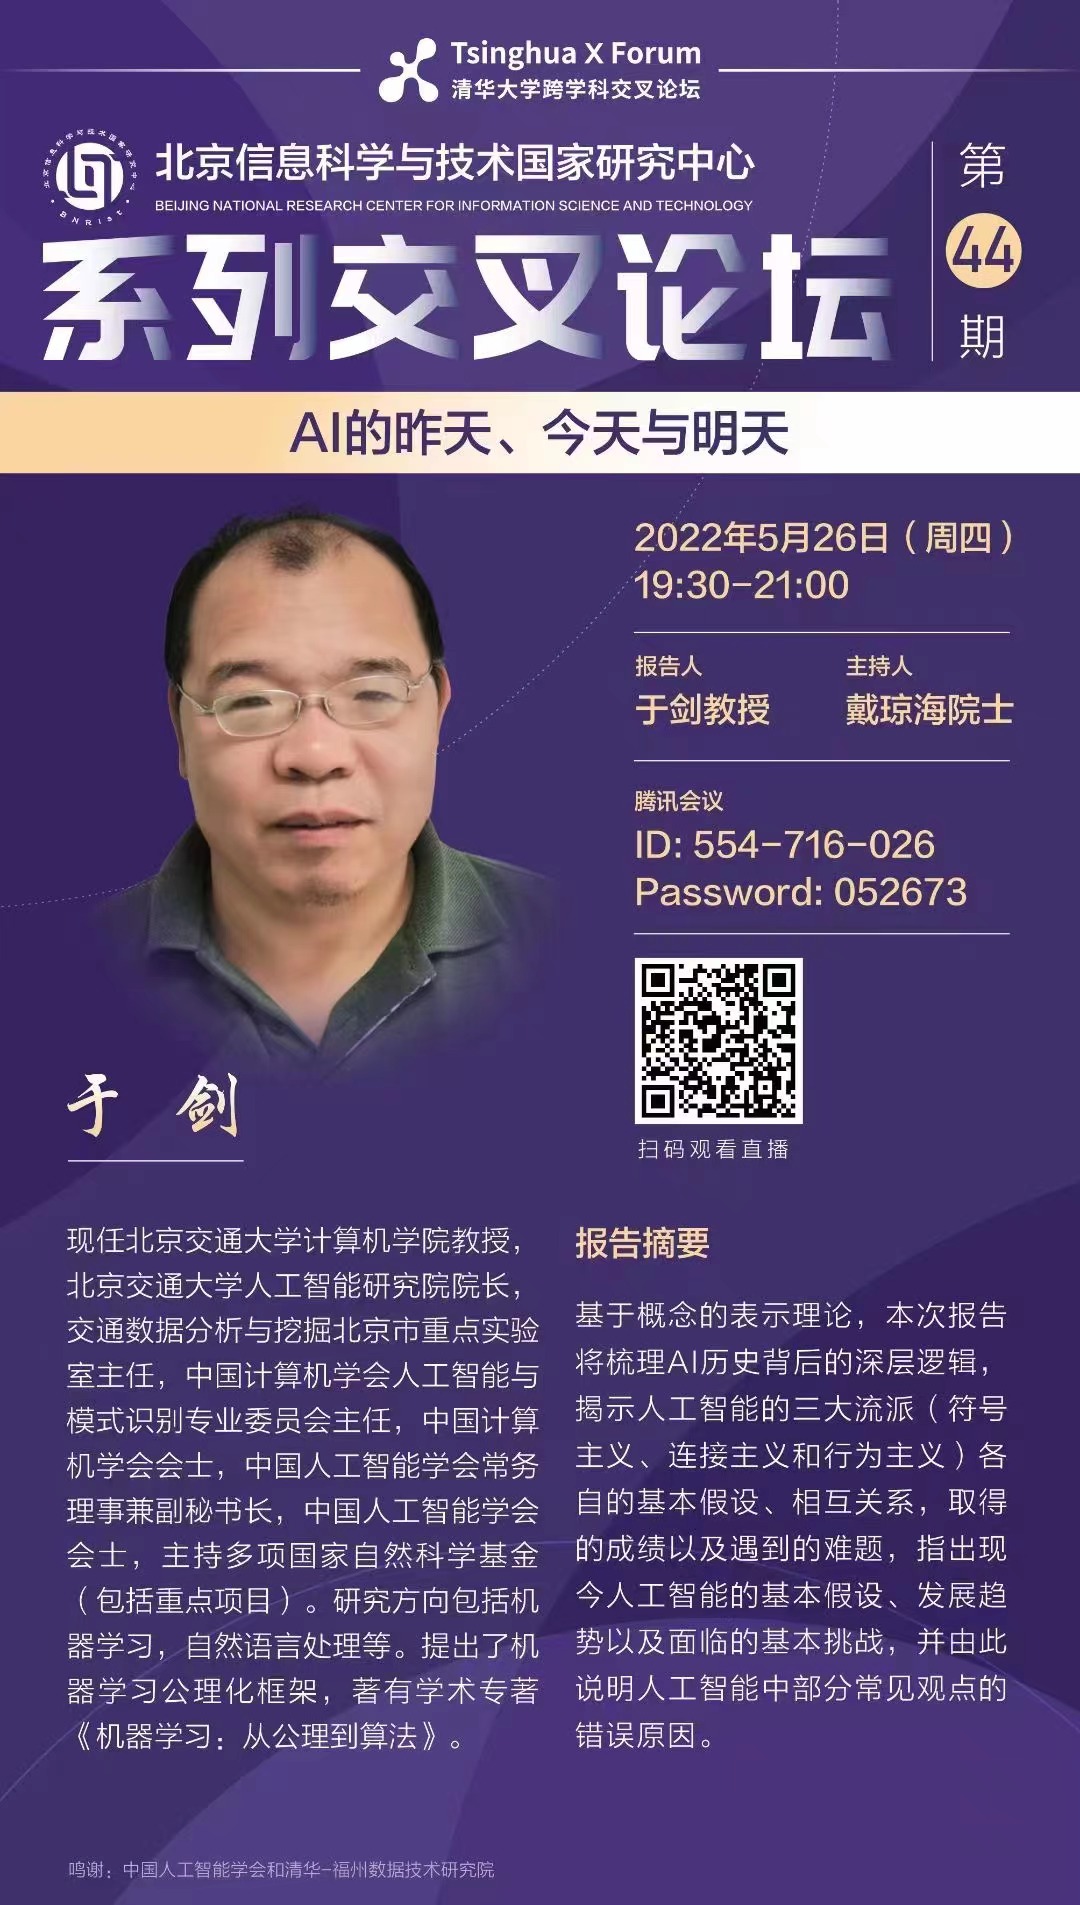 北京信息科技与技术国家研究中心系列交叉论坛第44期：AI的昨天、今天与明天